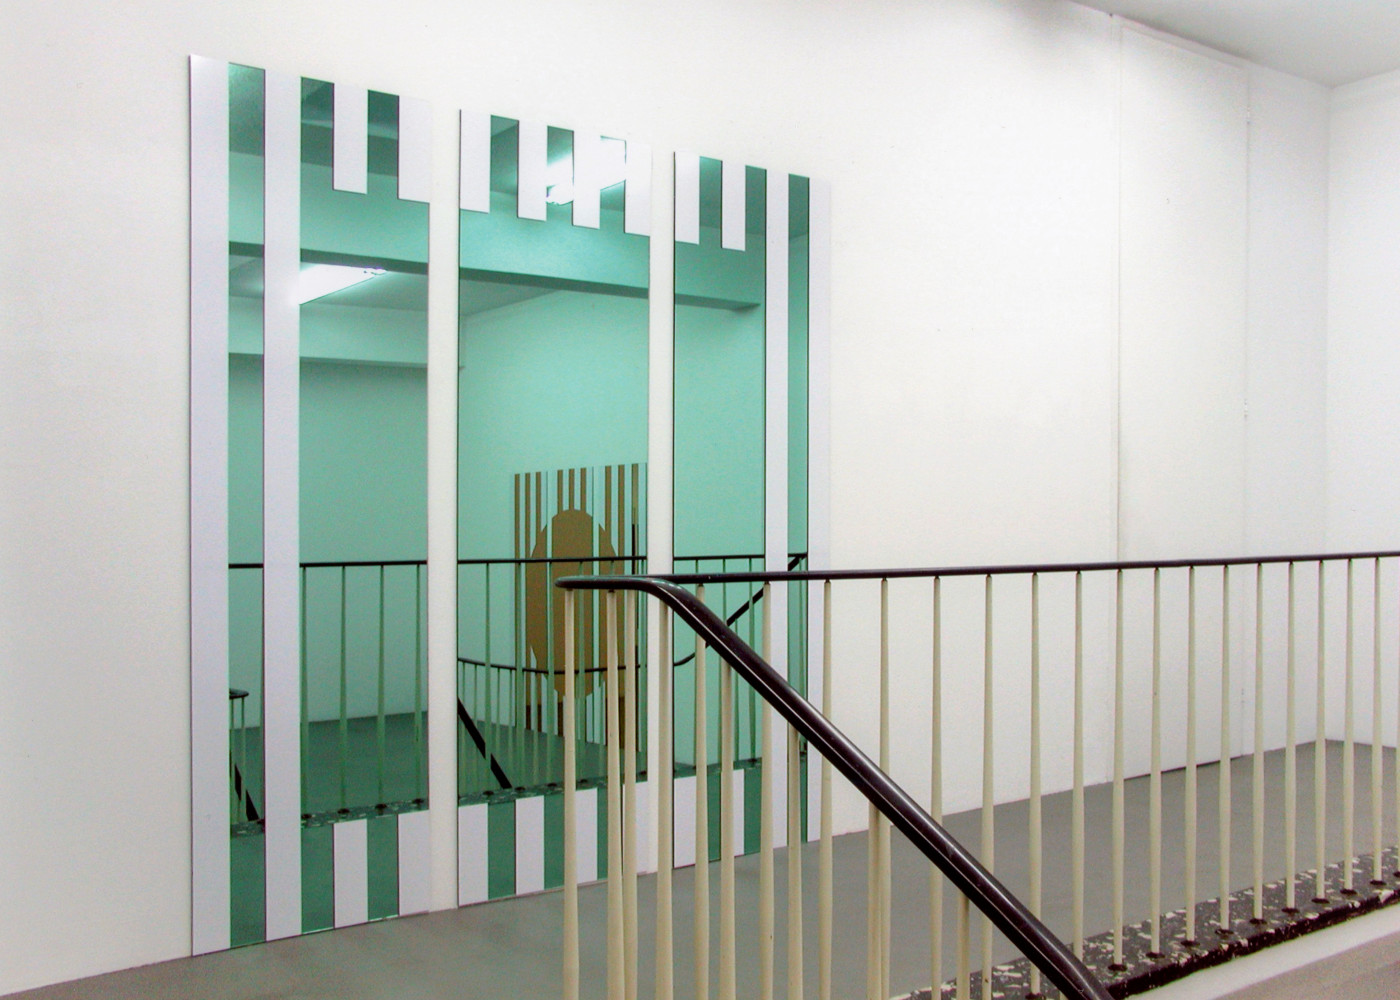 Daniel Buren, ‘Les Visages Colorés ’, Installationsansicht, Buchmann Galerie Köln, 2005